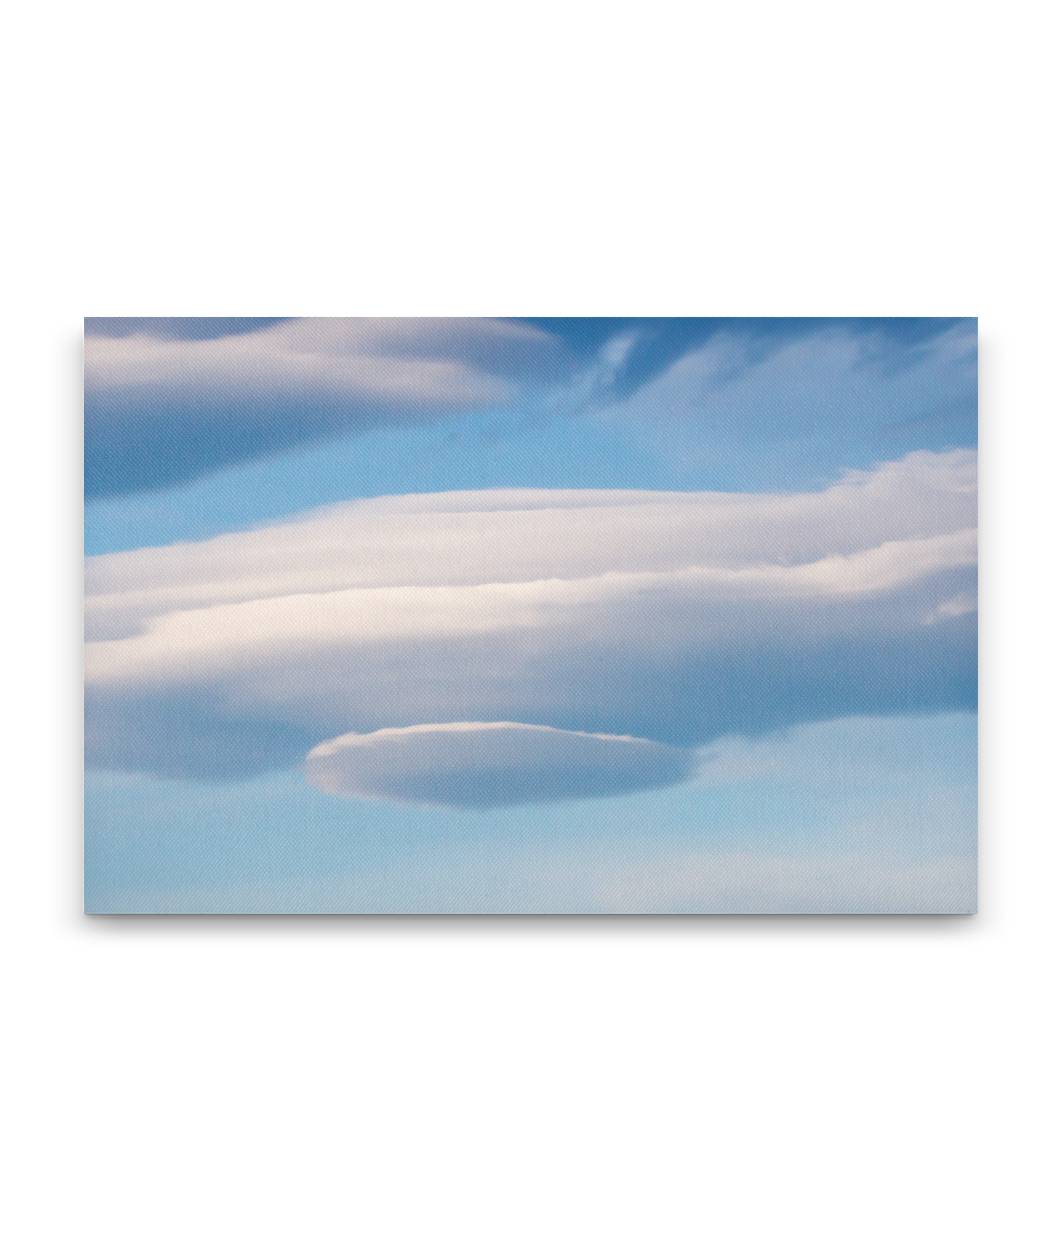 Lenticular Cloud Mother Ship over Cascades Mountains, Oregon